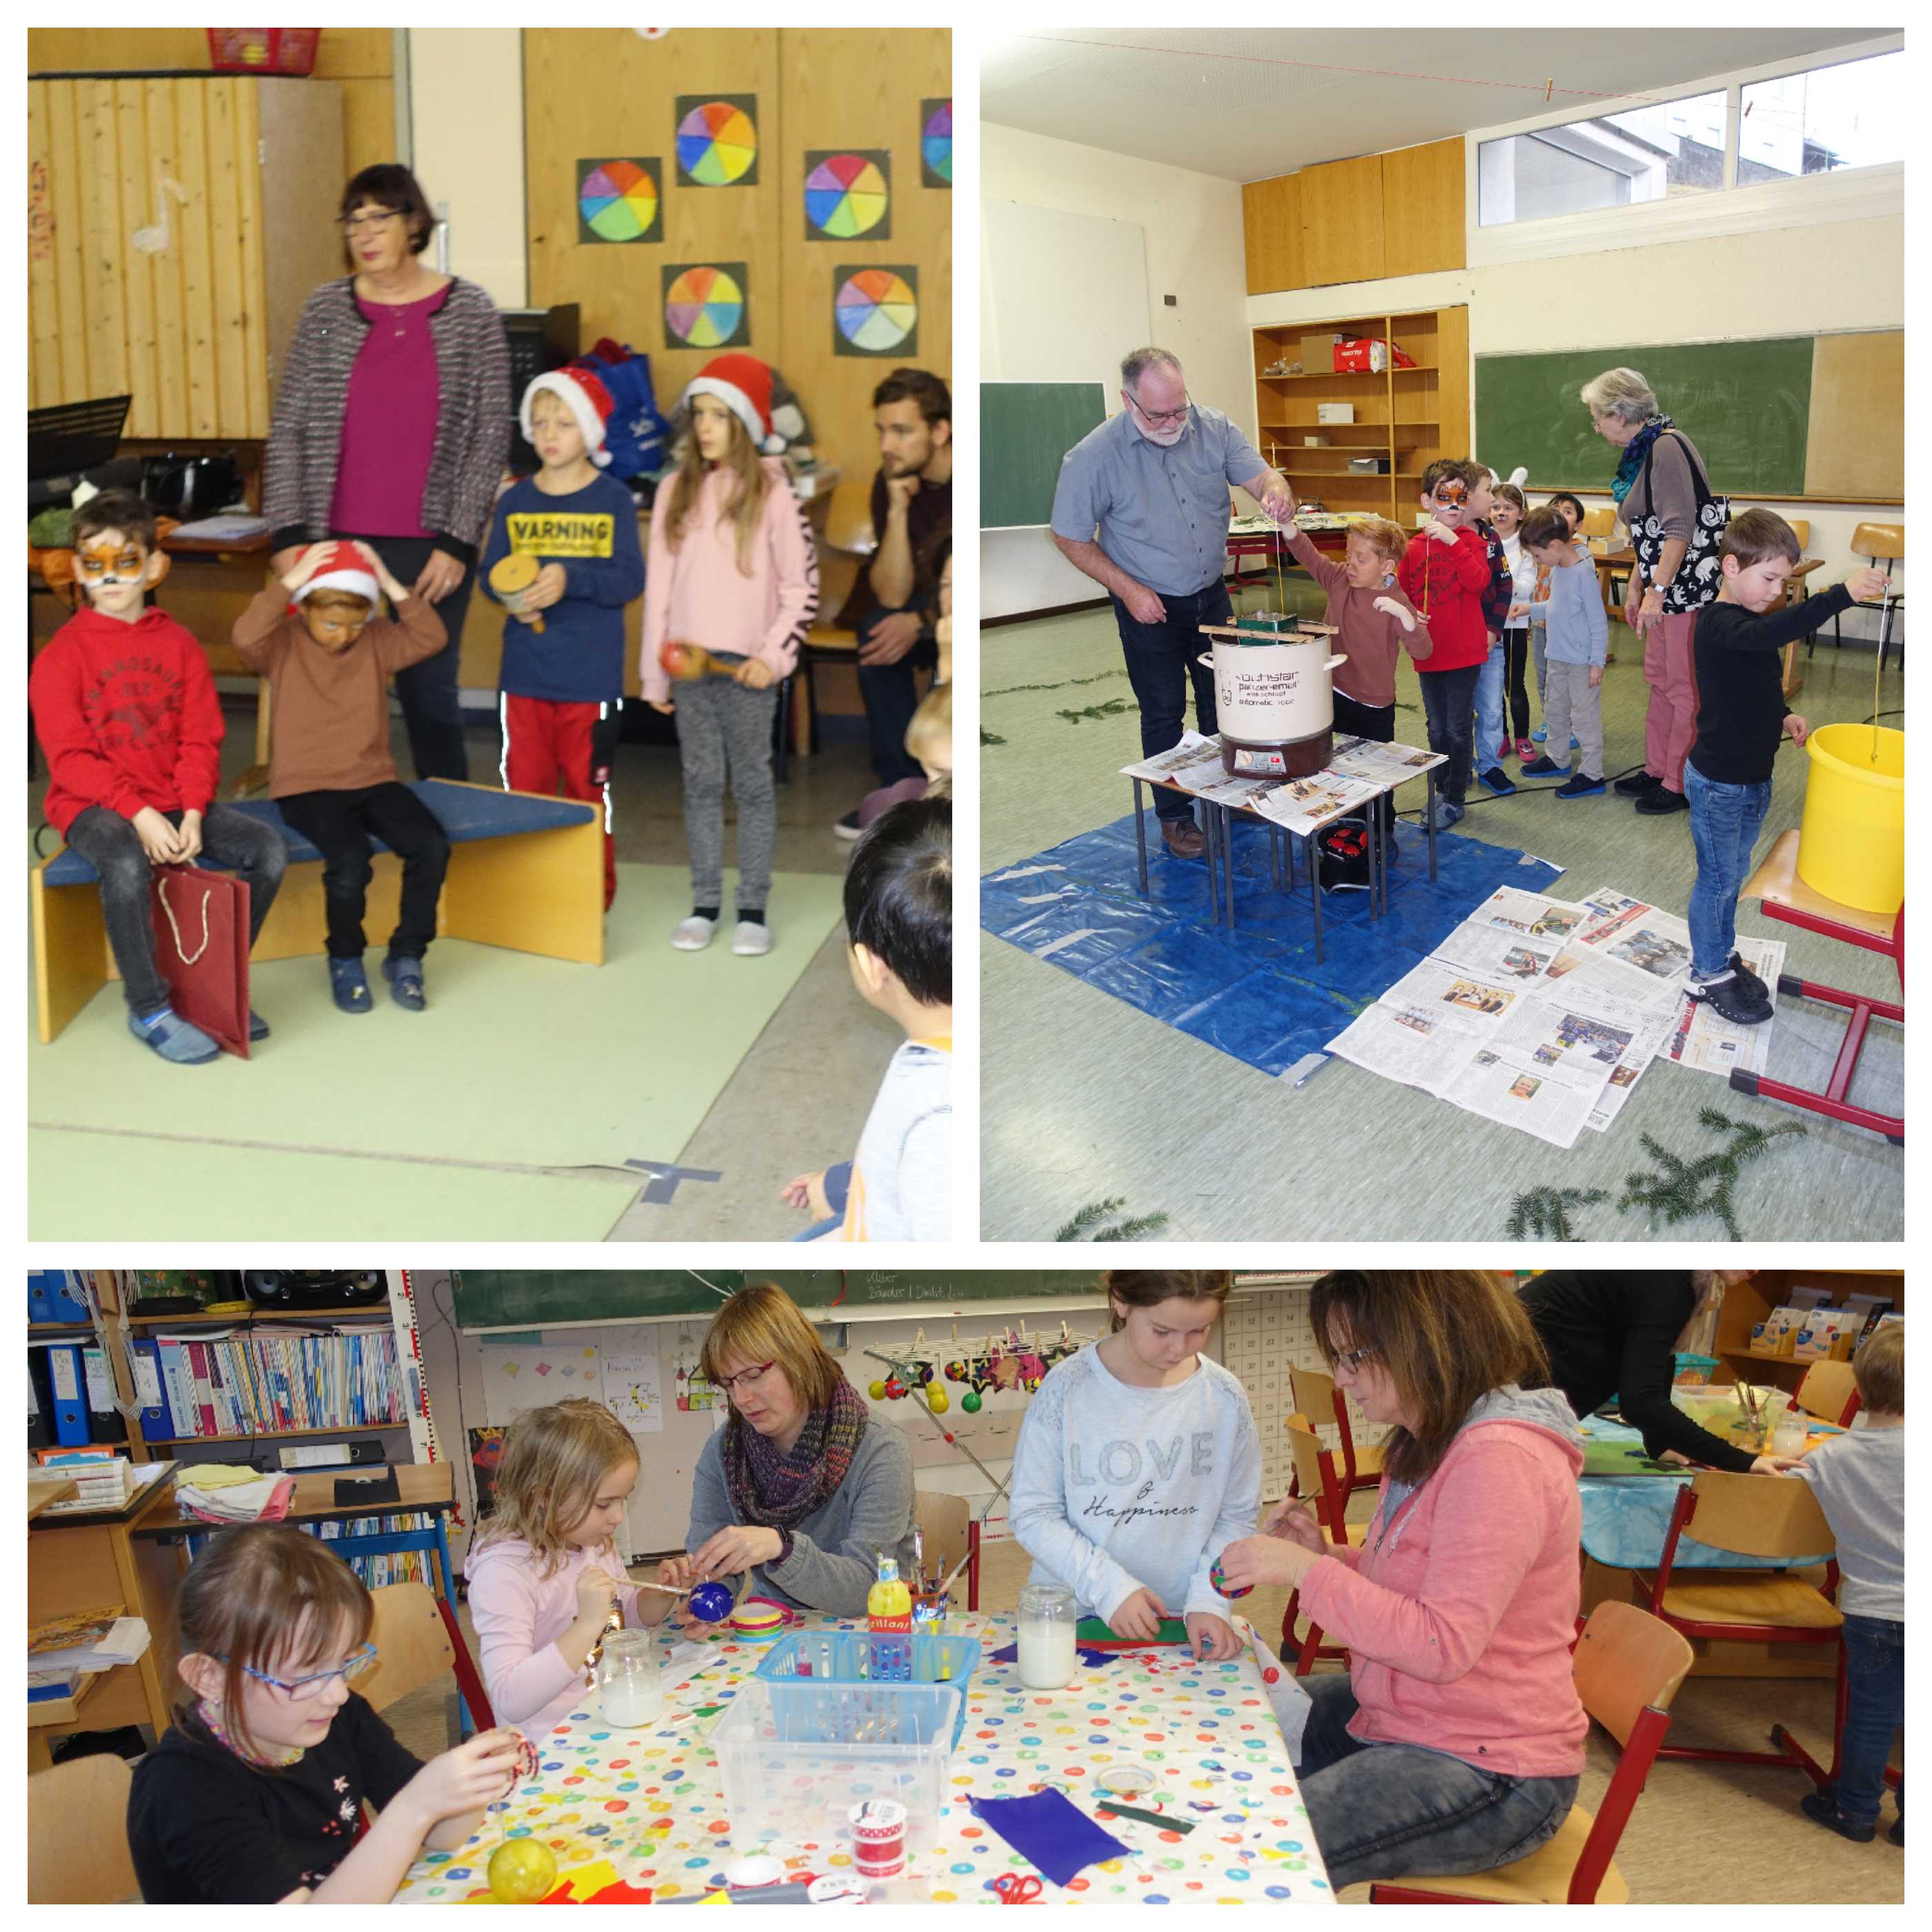 29.11.2019: Die Schule veranstaltet zusammen mit dem Kindergarten eine große Adventswerkstatt am Vormittag